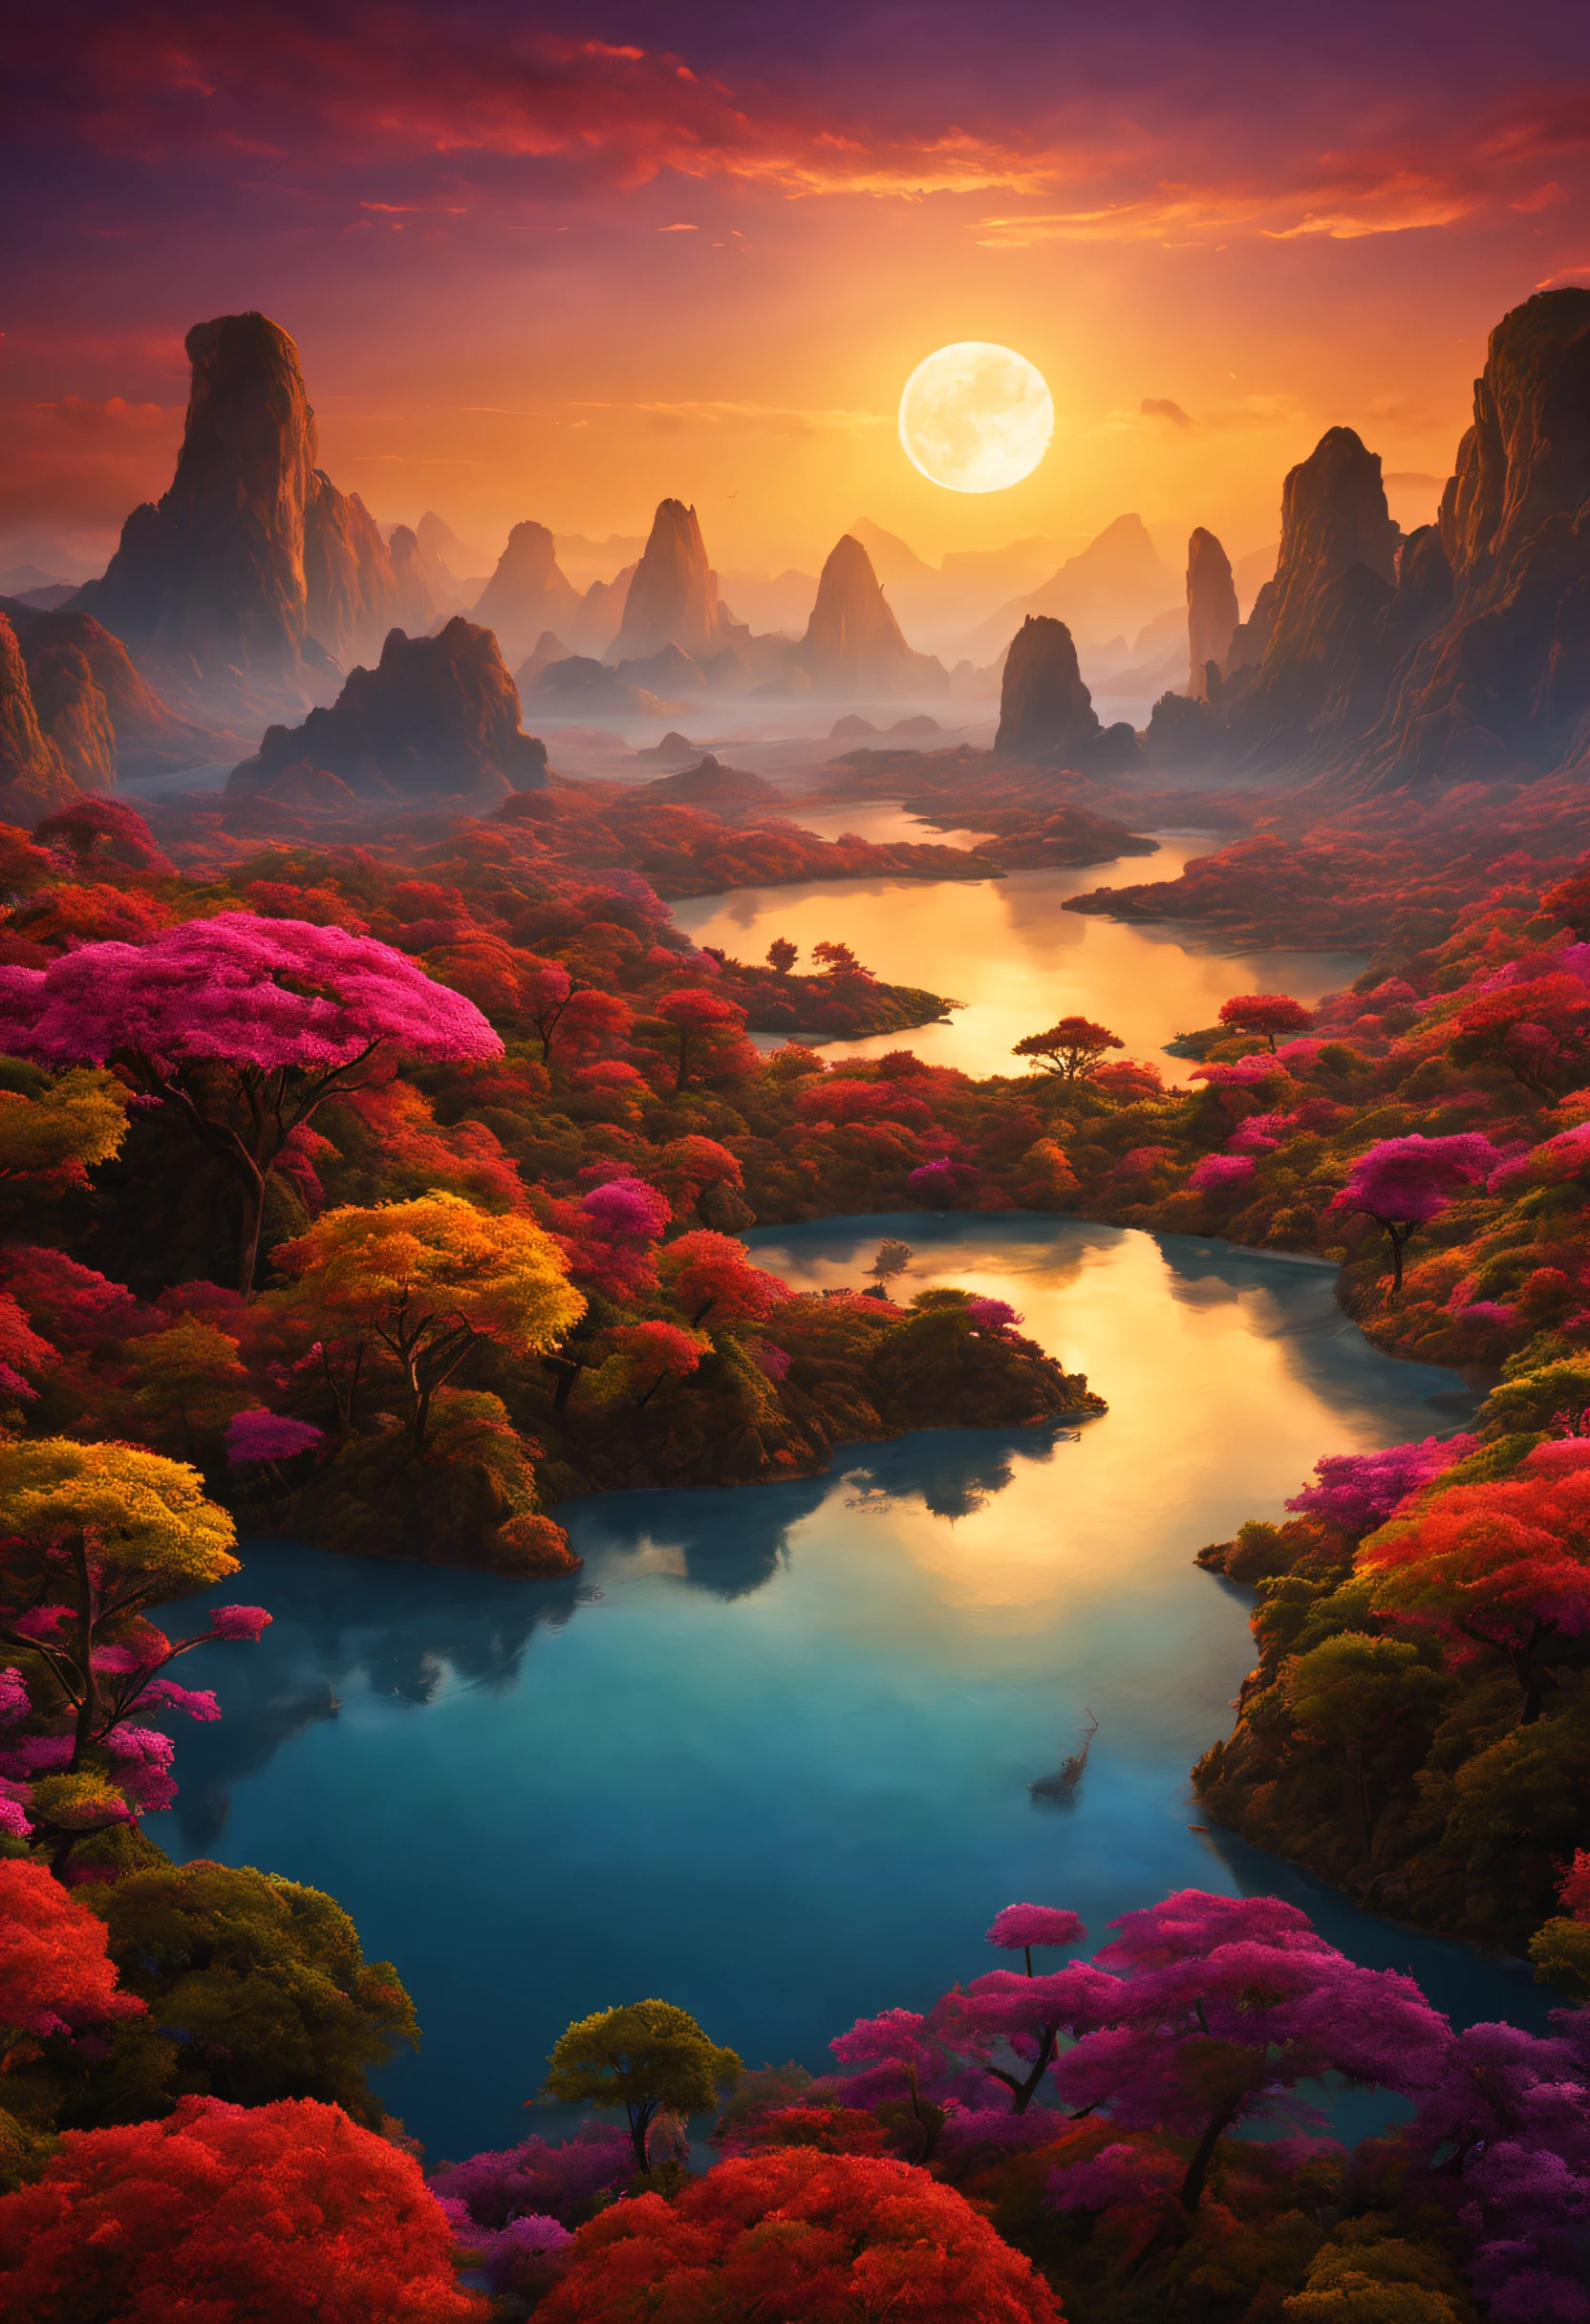 Uma linda e magnífica paisagem imaginária em um planeta exótico com muito pôr do sol colorido e uma extraordinária